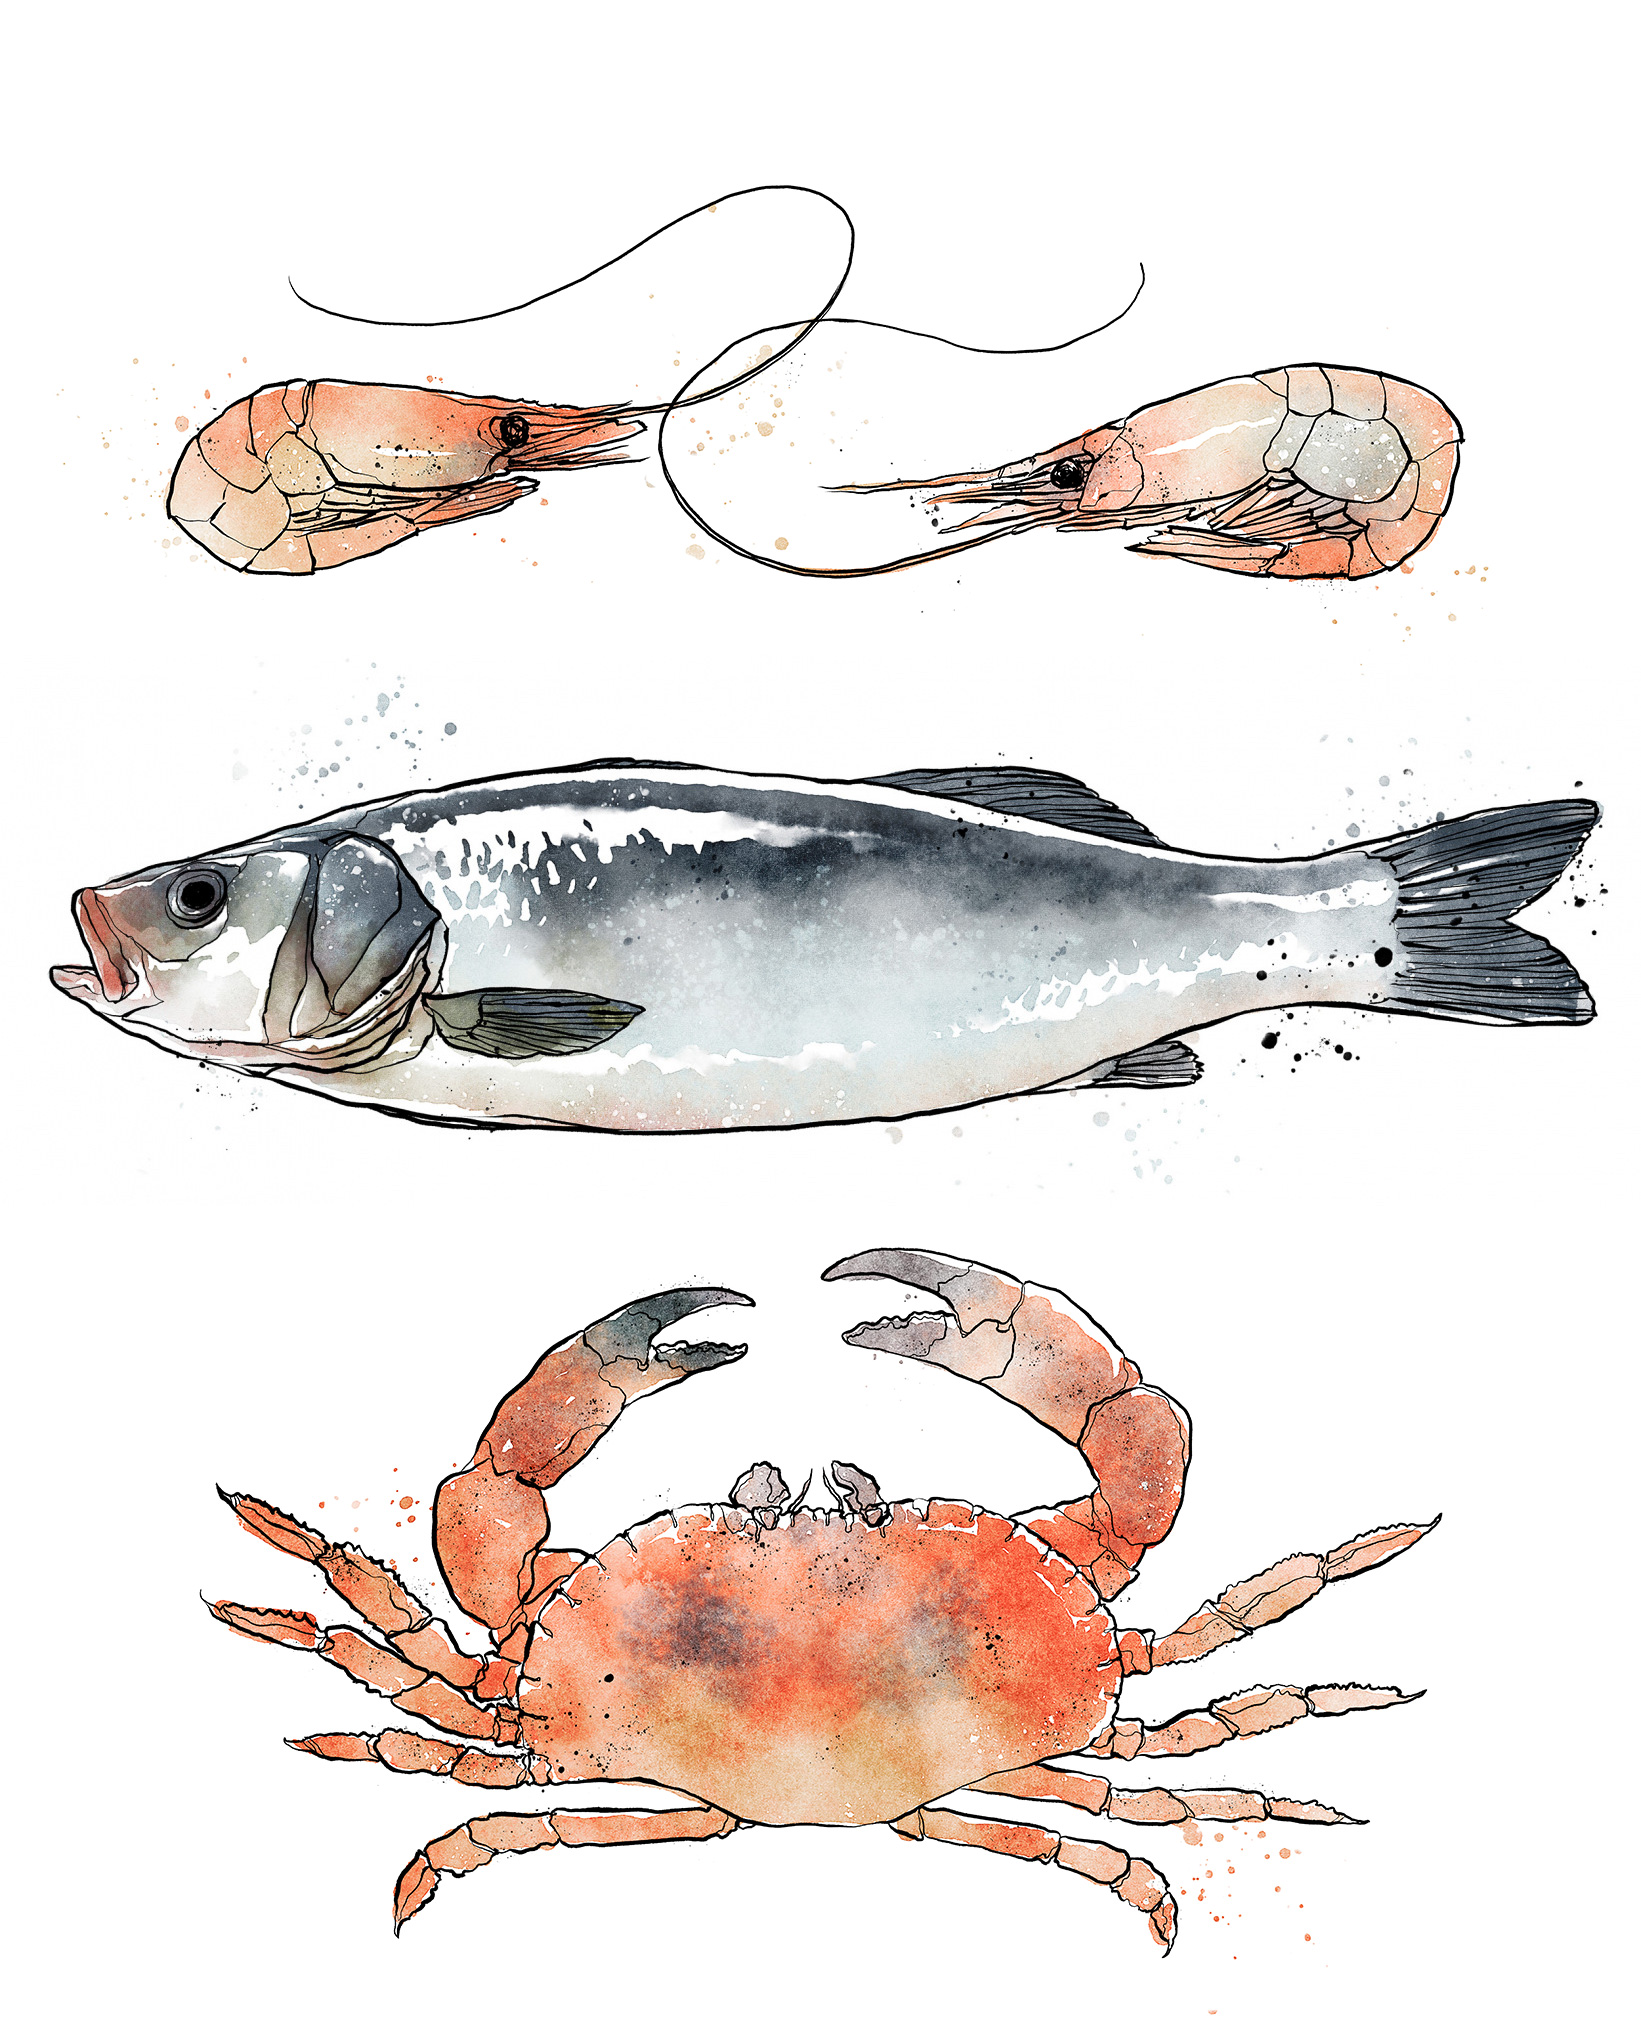 Fiskgrossisten - key visual illustrations